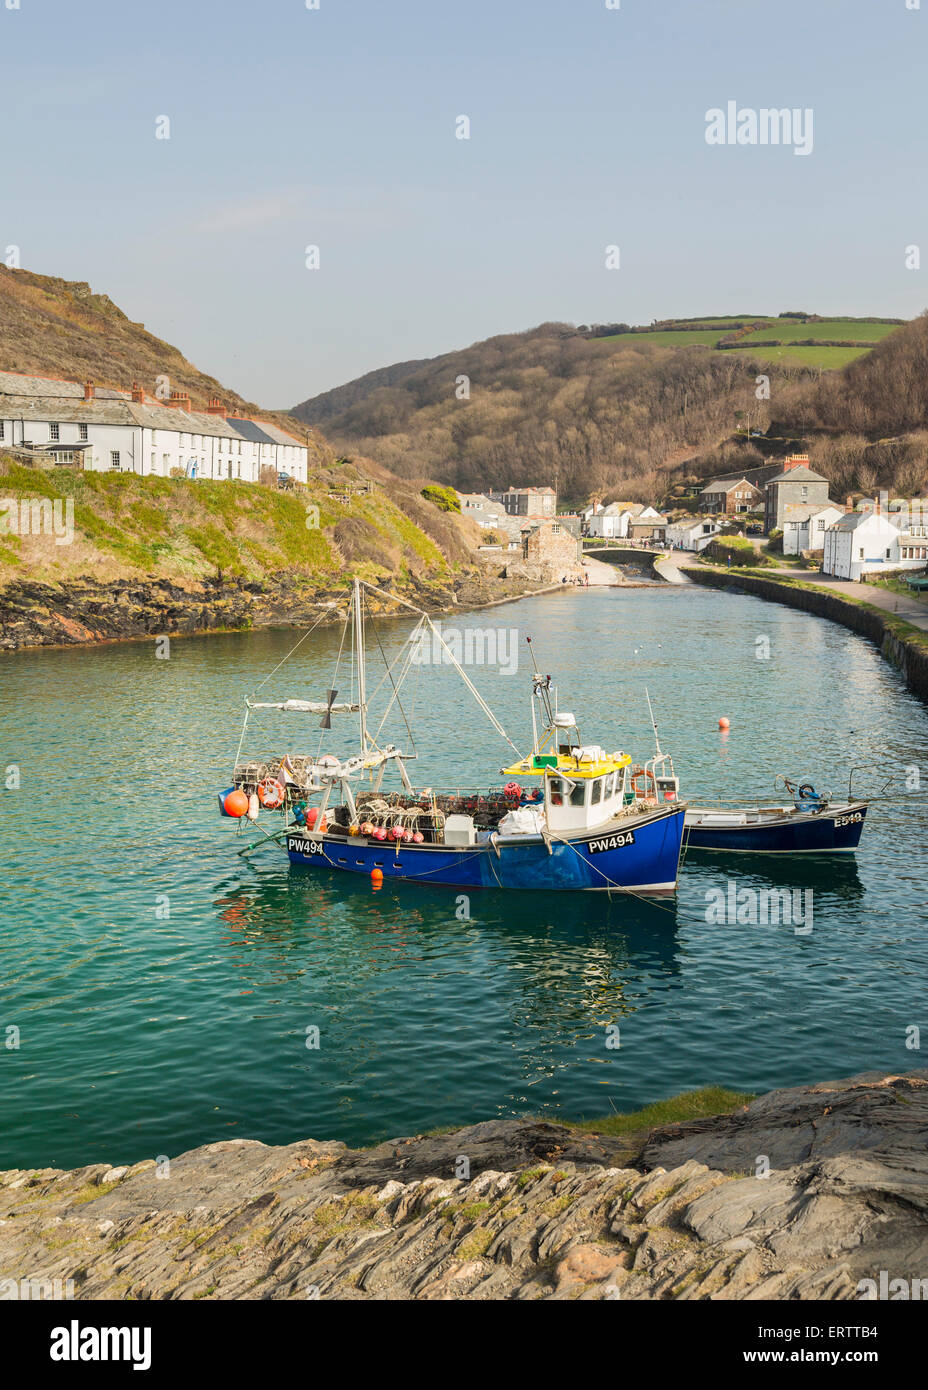 Fishing boats, Boscastle, Cornwall, England, UK Stock Photo